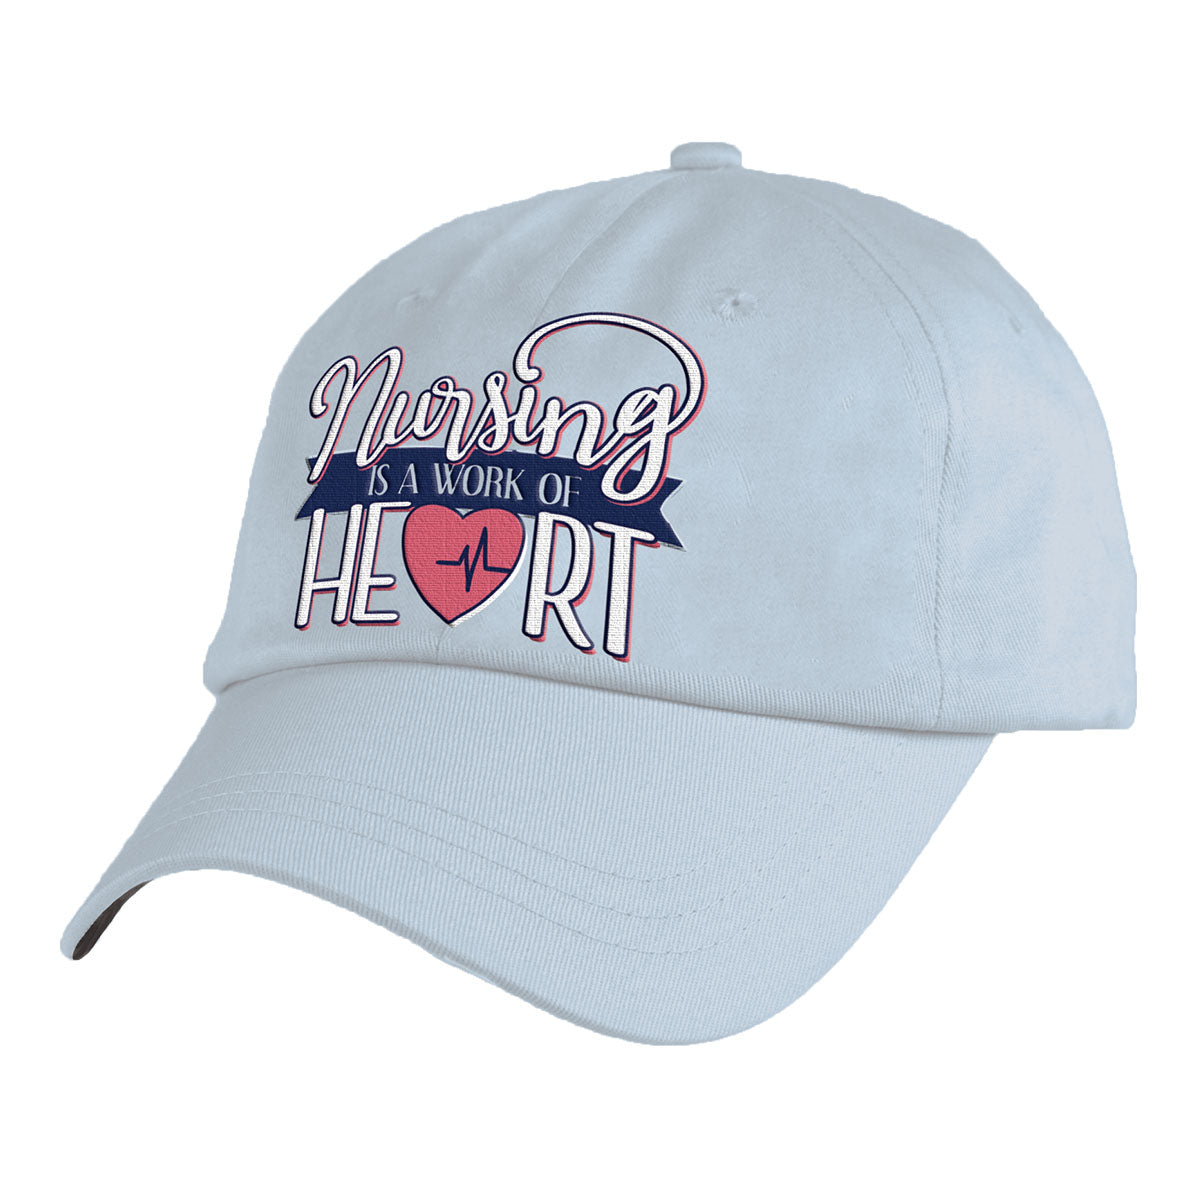 Itsa Girl Thing Hat - Nursing Heart Cap